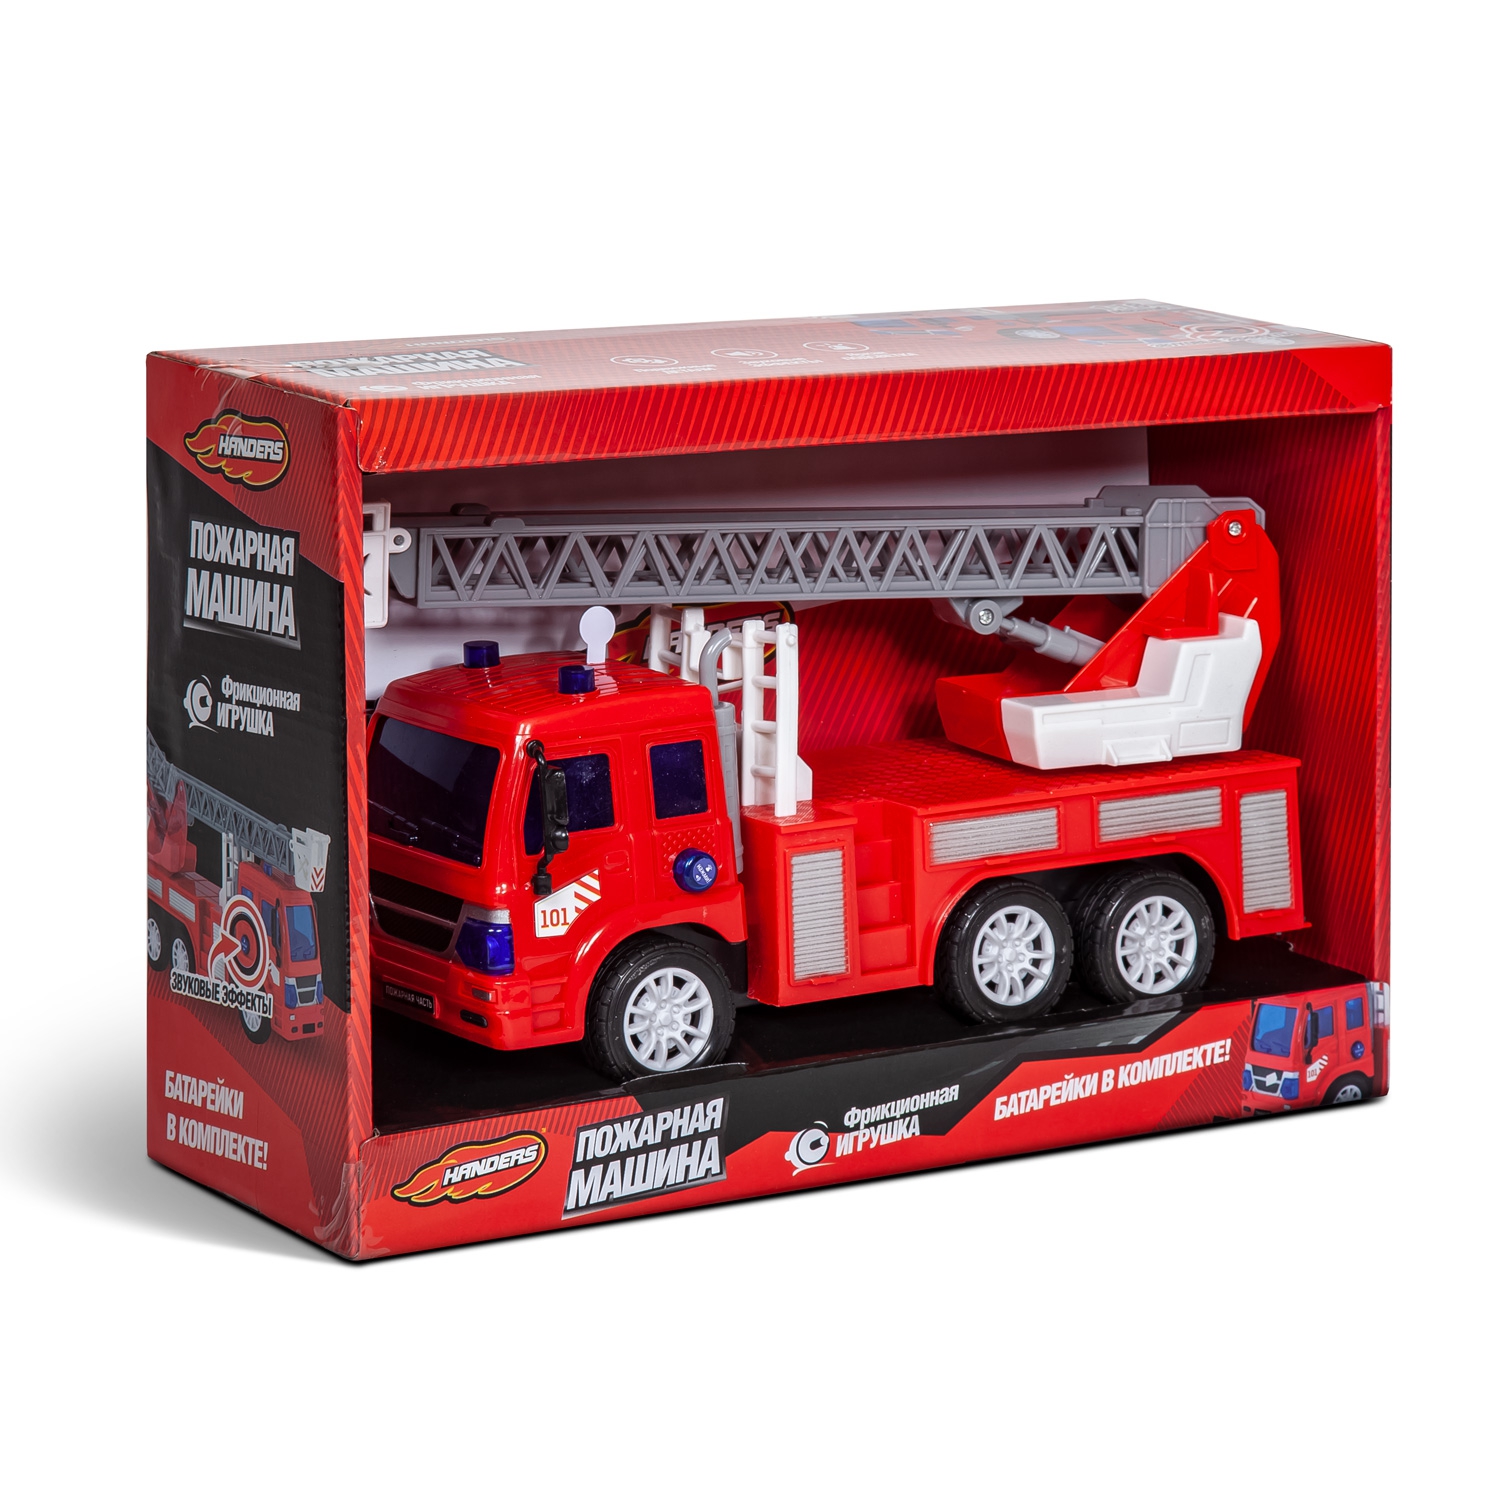 Фрикционная игрушка Handers Пожарная машина: Автолестница (27 см, свет, звук, подвиж. детали) (Вид 1)